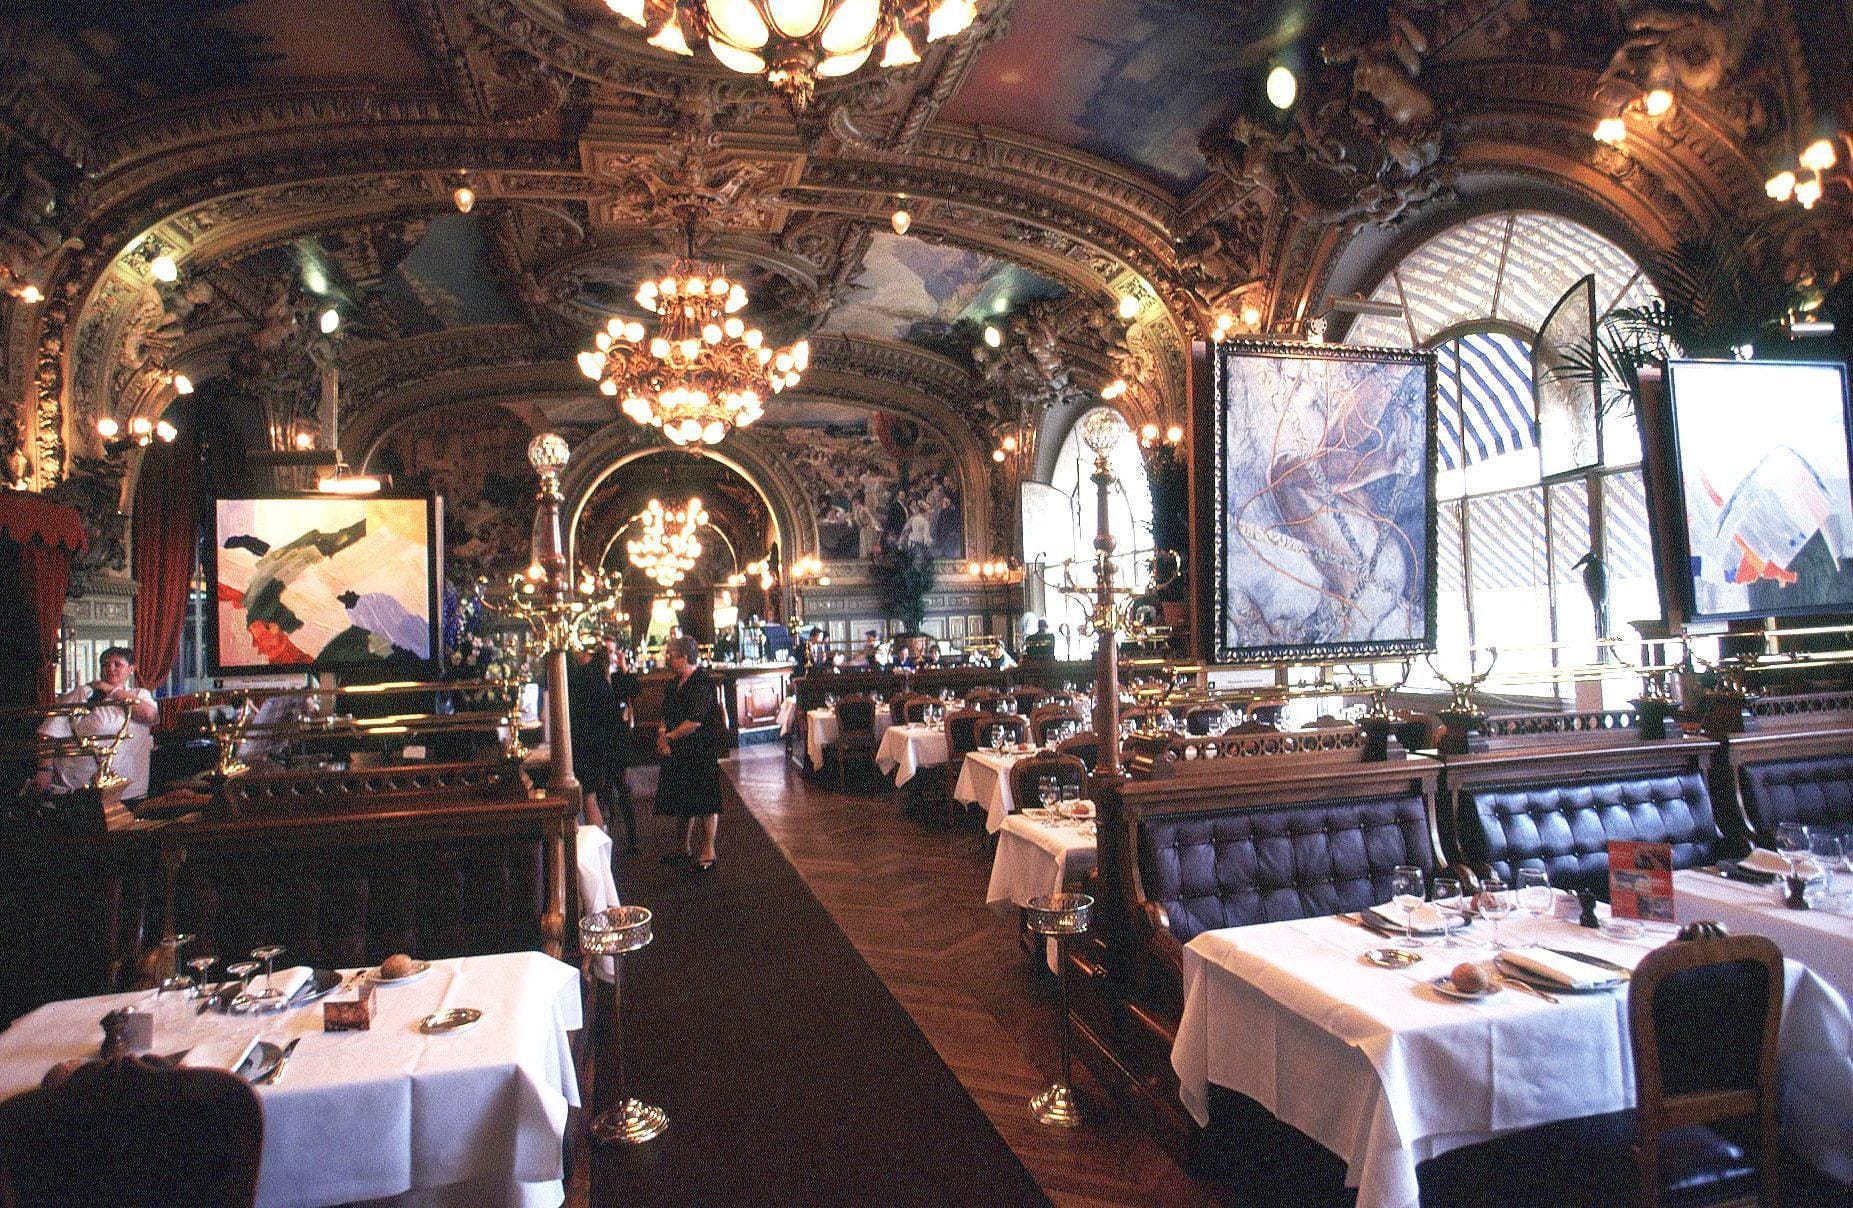 Das zu literarischen Ehren gekommene Restaurant "Le Train Bleu" mit seinem prunkvollen Dekor und den vielen Gemälden ist eine Sehenswürdigkeit für sich, Agatha Christie ließ unter dem Titel "Der blaue Express" in ihm morden.